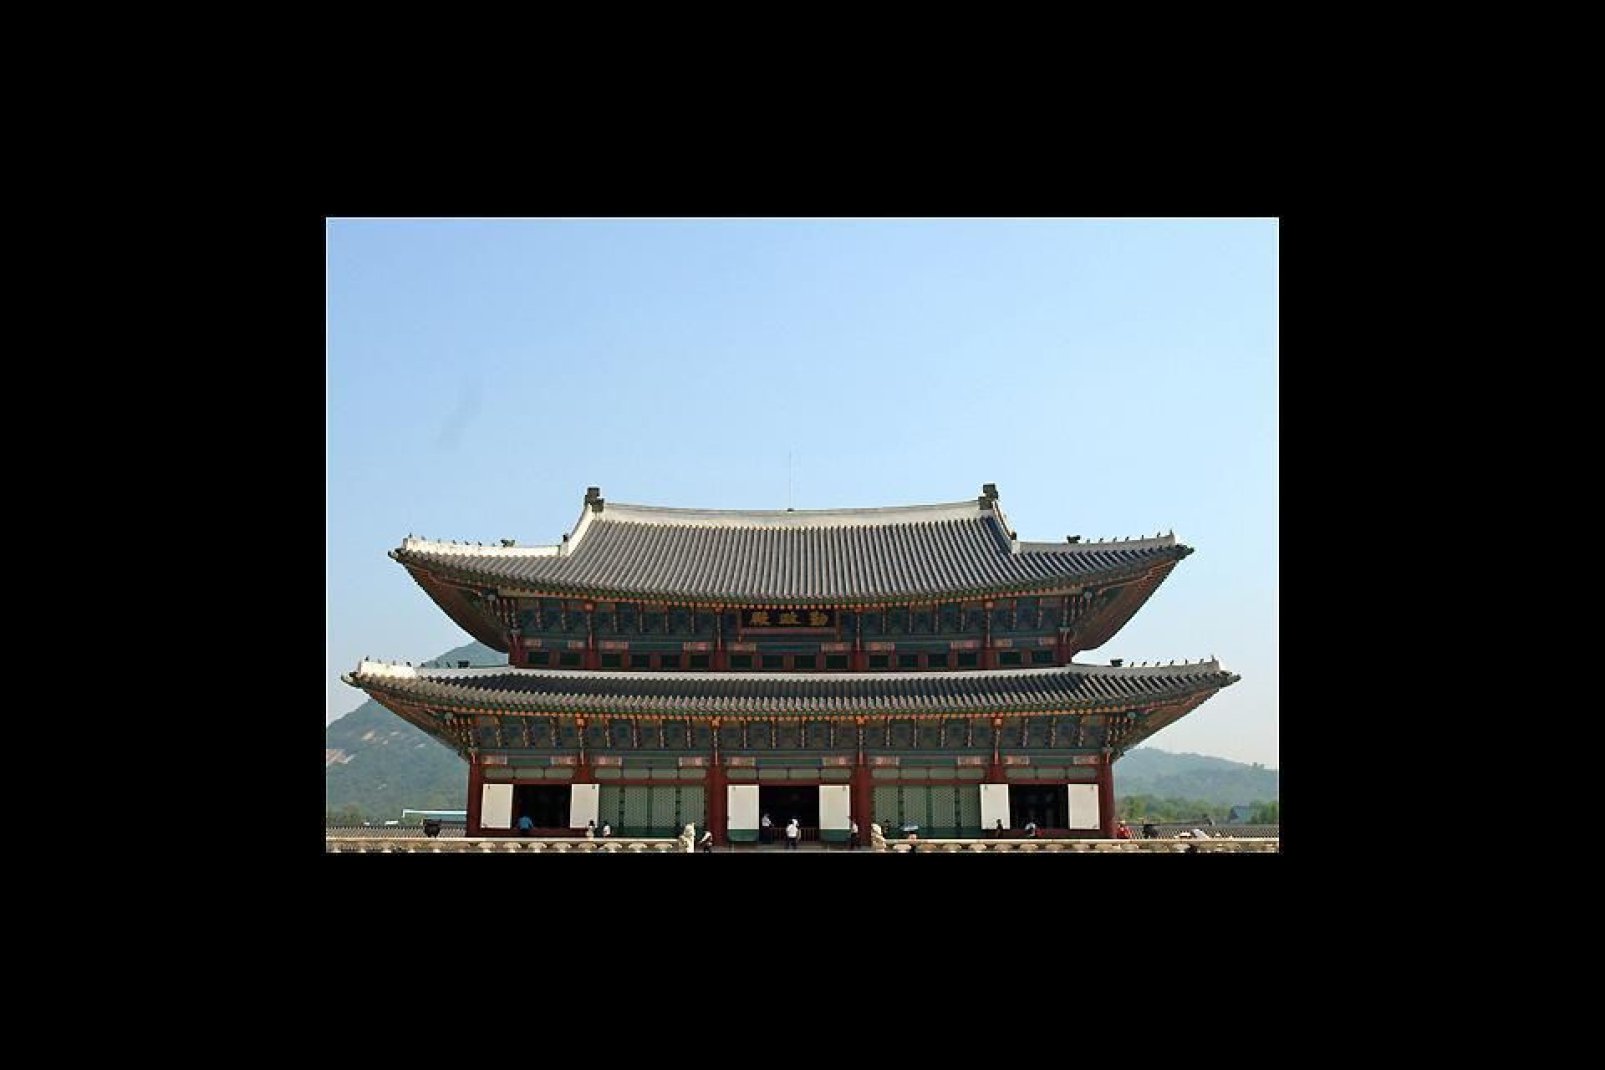 Dieser Palast wurde 1934 gebaut und diente einst als Hauptpalast der Joseon-Dynastie.